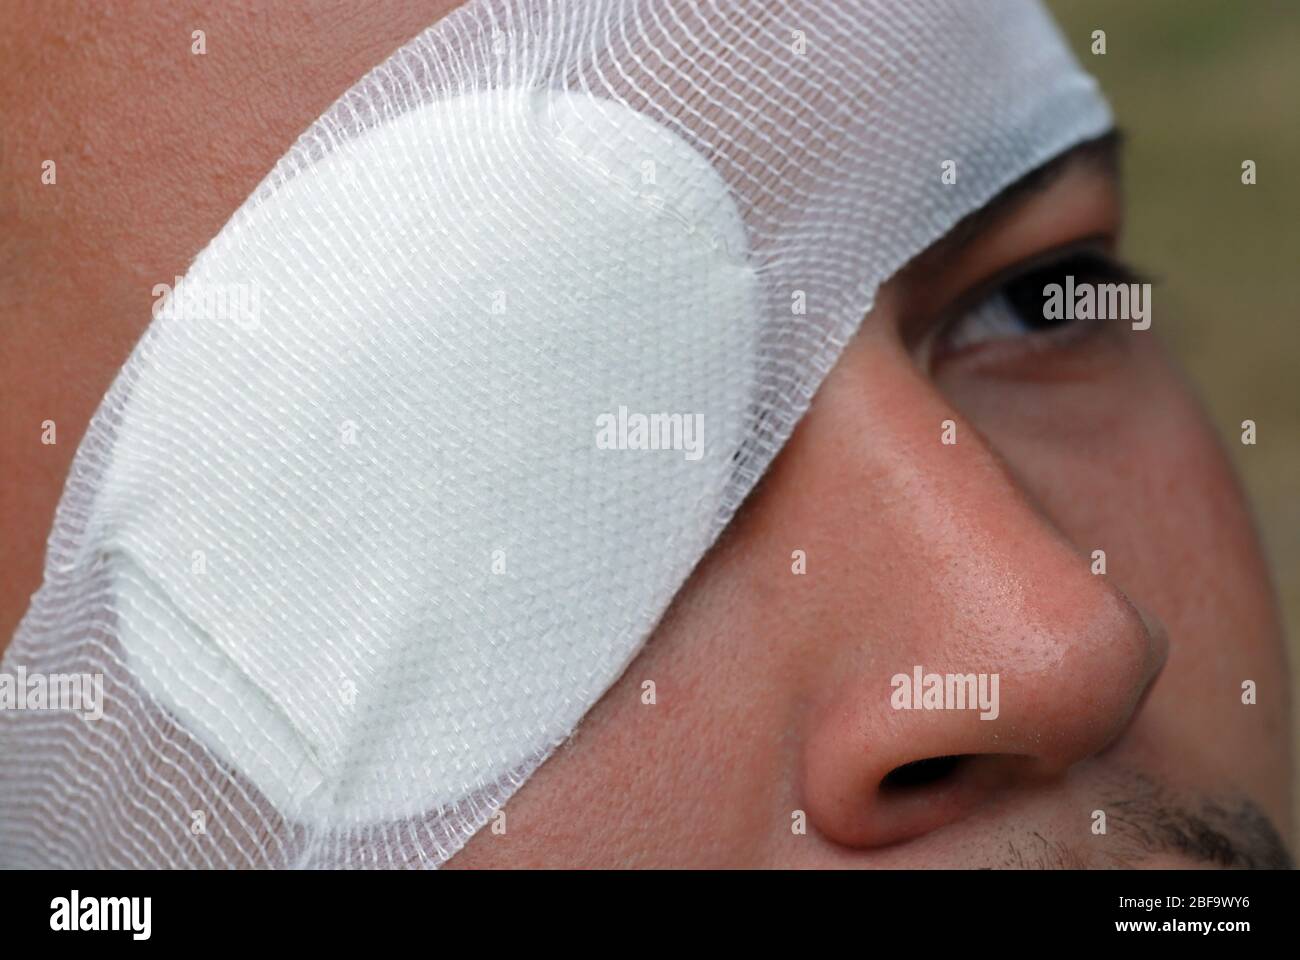 Un uomo che indossa un cerotto. Oltre ad essere usato per trattare una lesione, le zone dell'occhio possono anche essere usate per trattare un occhio pigro. Foto Stock